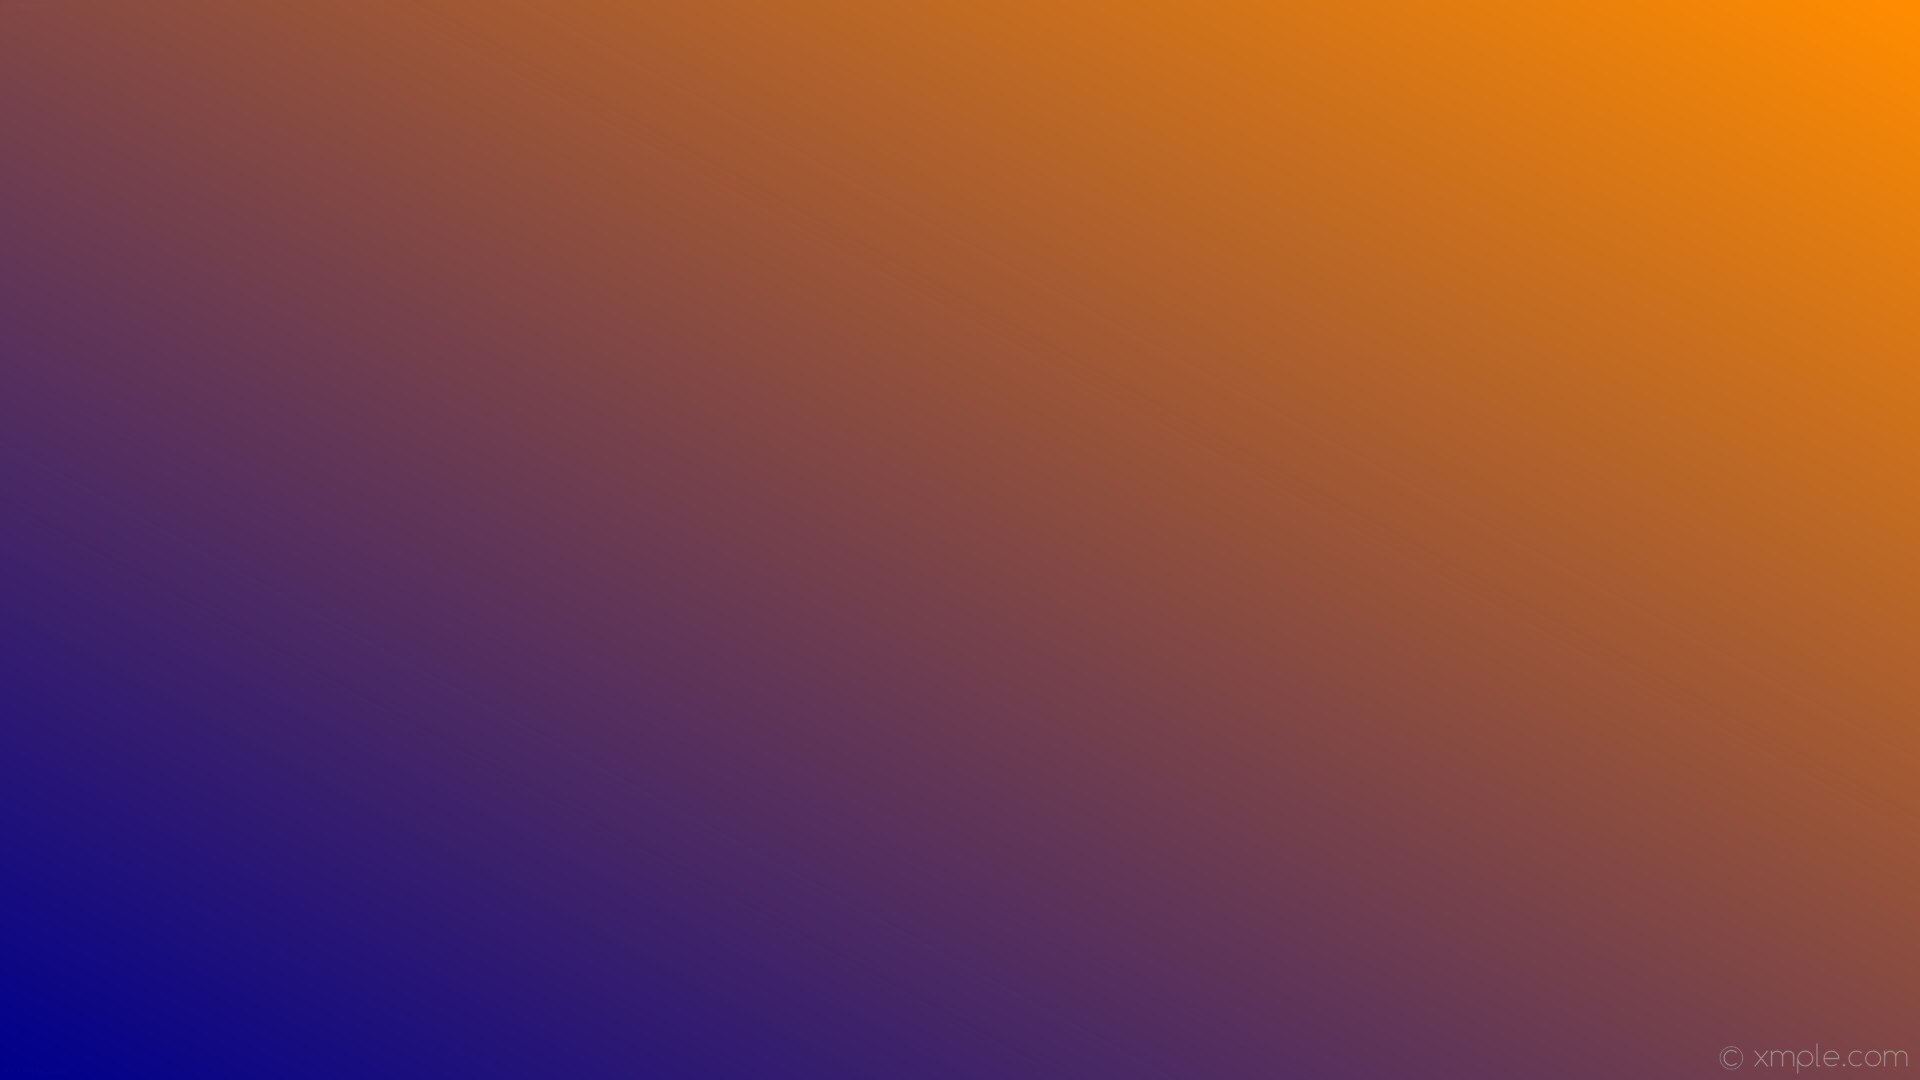 Wallpaper linear gradient orange blue dark orange dark blue #ff8c00 b 30